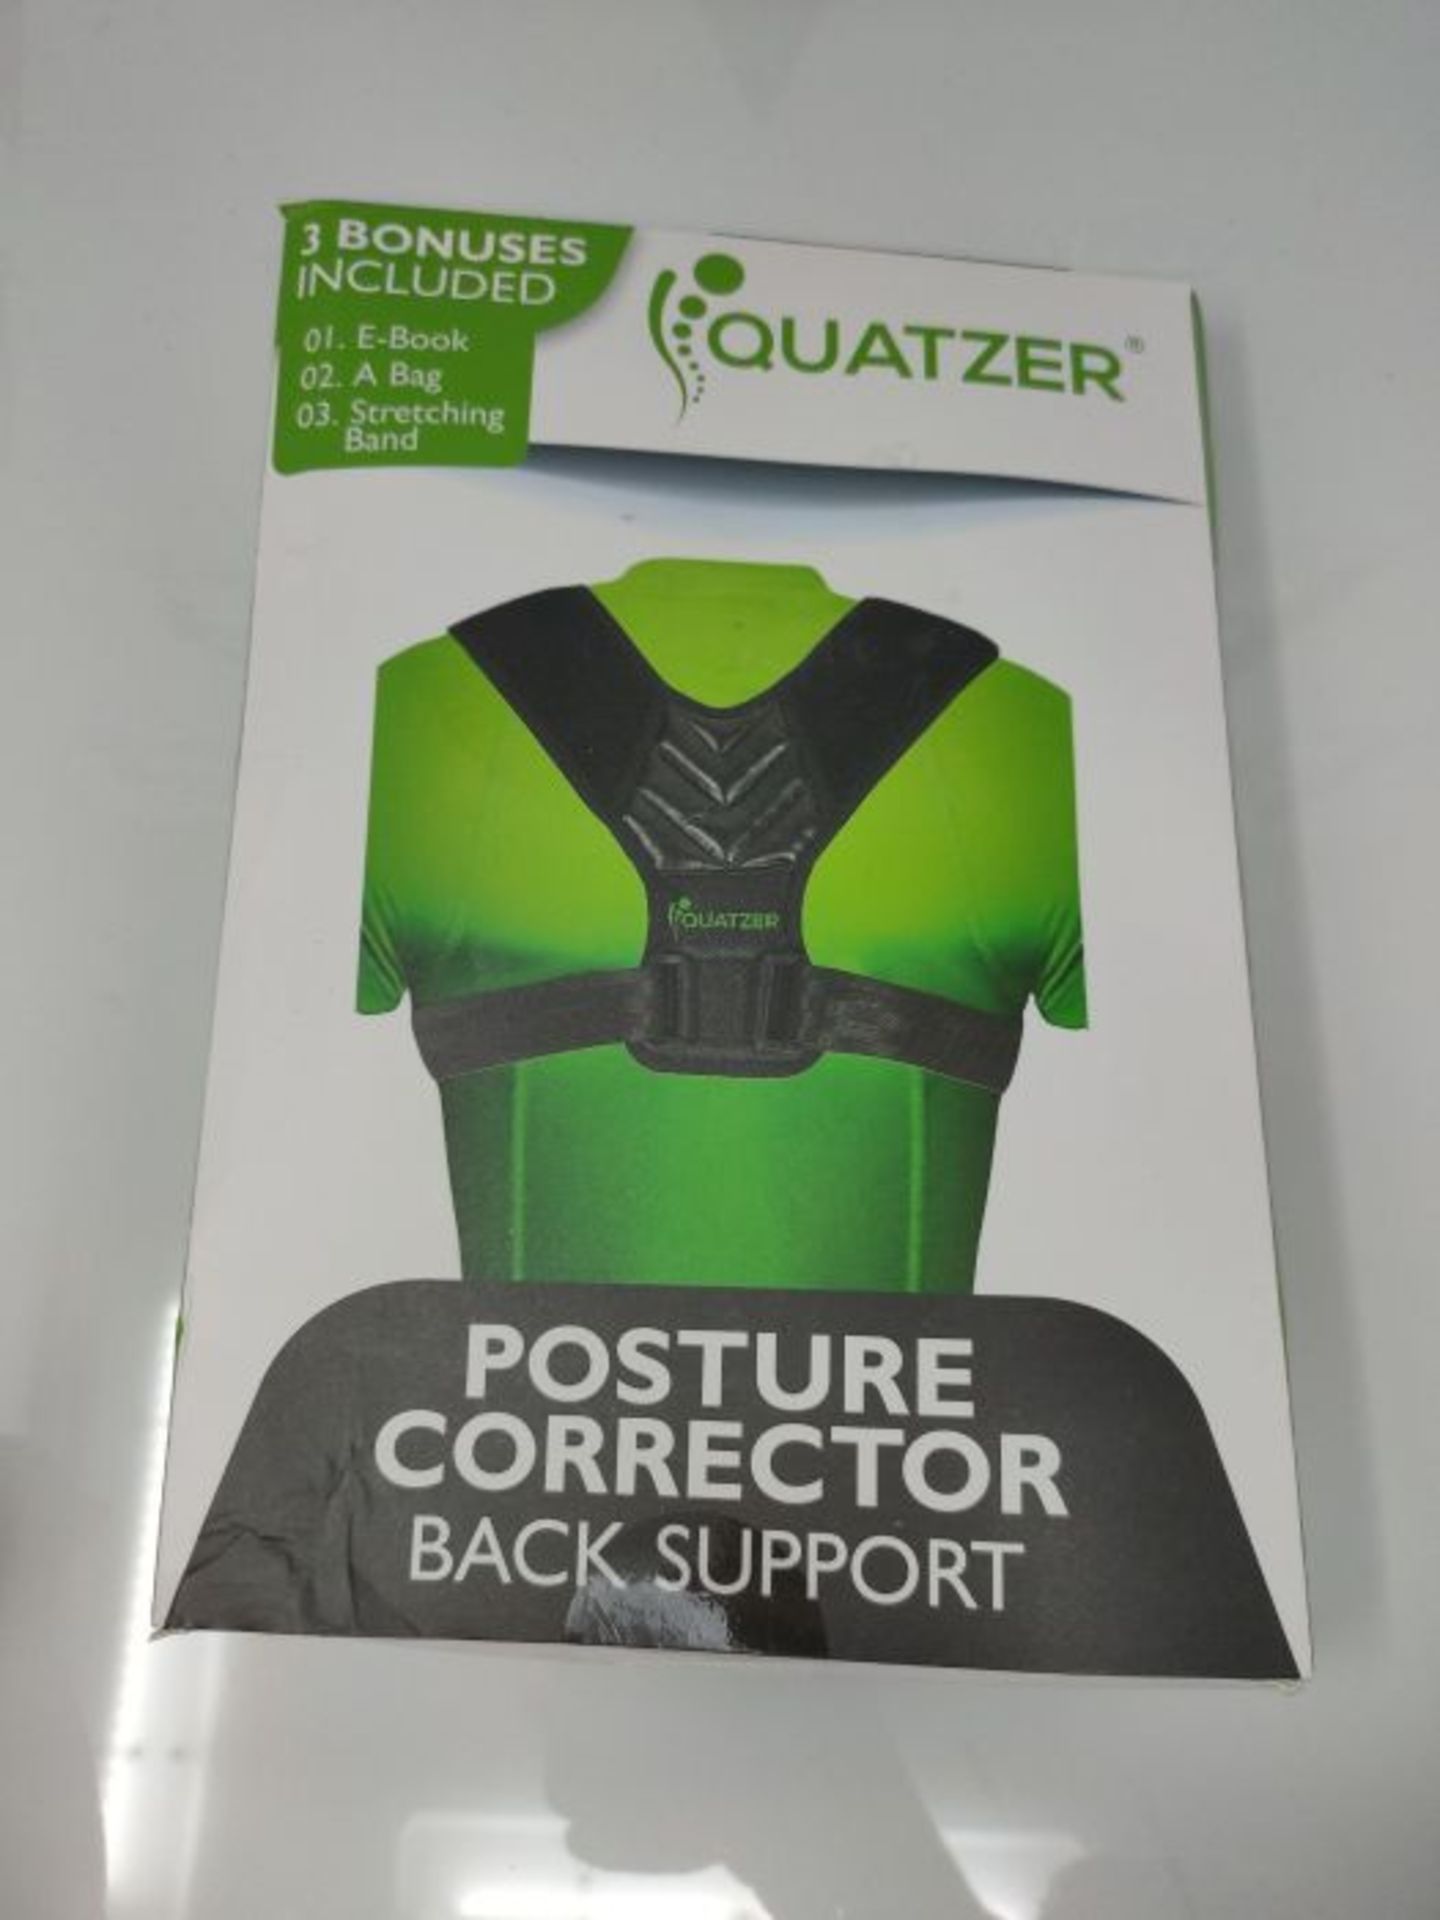 Corrector de postura para espalda Hombre y Mujer - Faja dorsal ajustable para hombros - Image 2 of 3